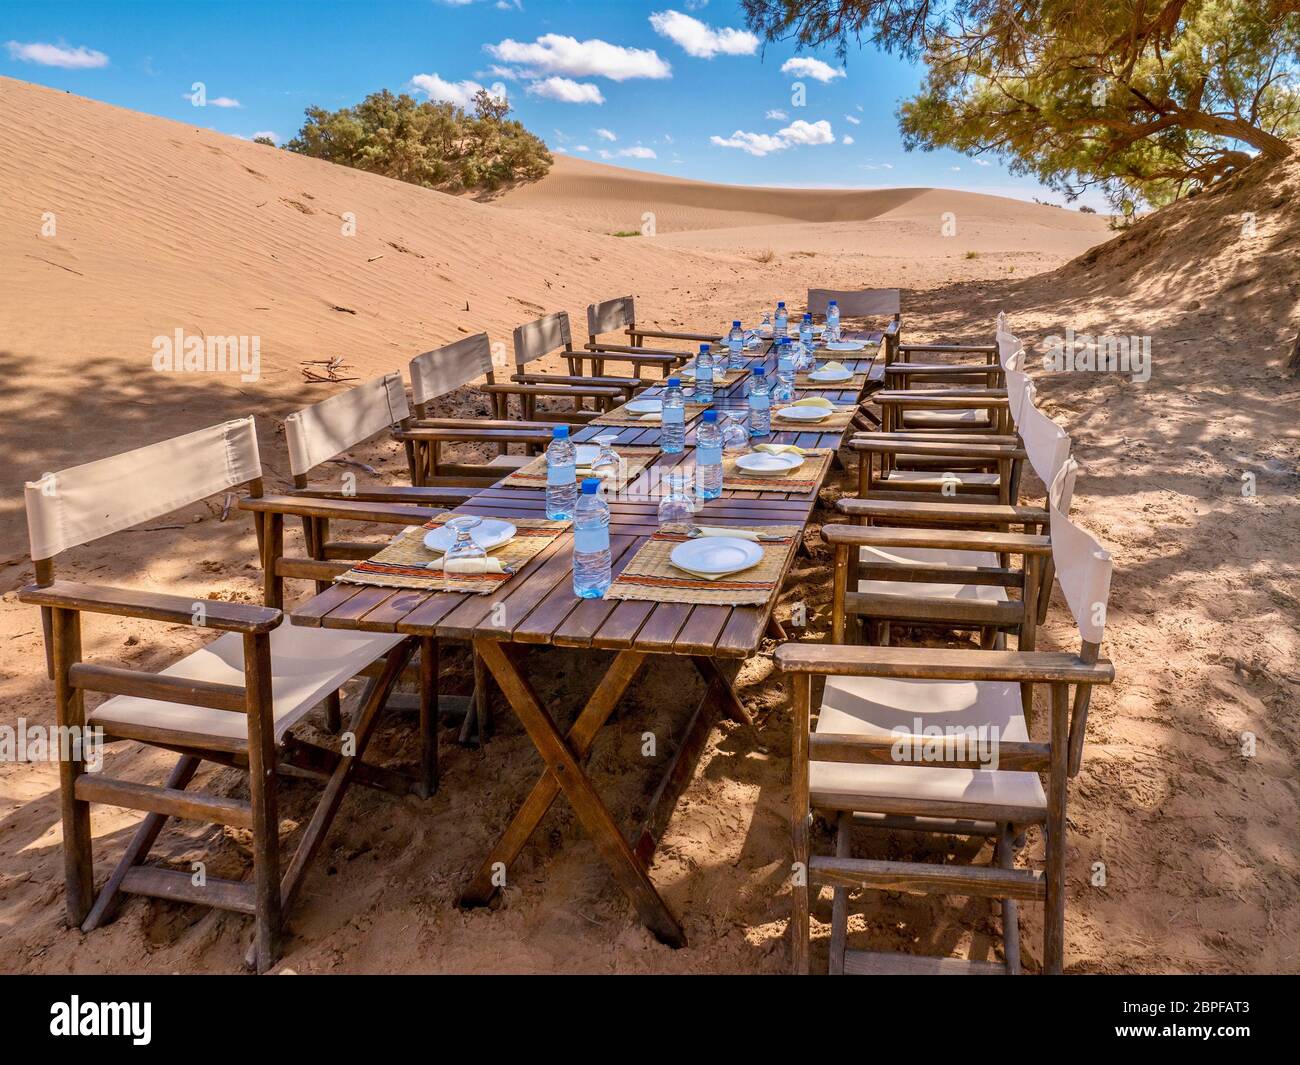 Una larga mesa de madera y sillas preparadas para un almuerzo turístico en el desierto del Sahara, Marruecos. Conceptual para las cancelaciones de último minuto de turistas y viajes Foto de stock